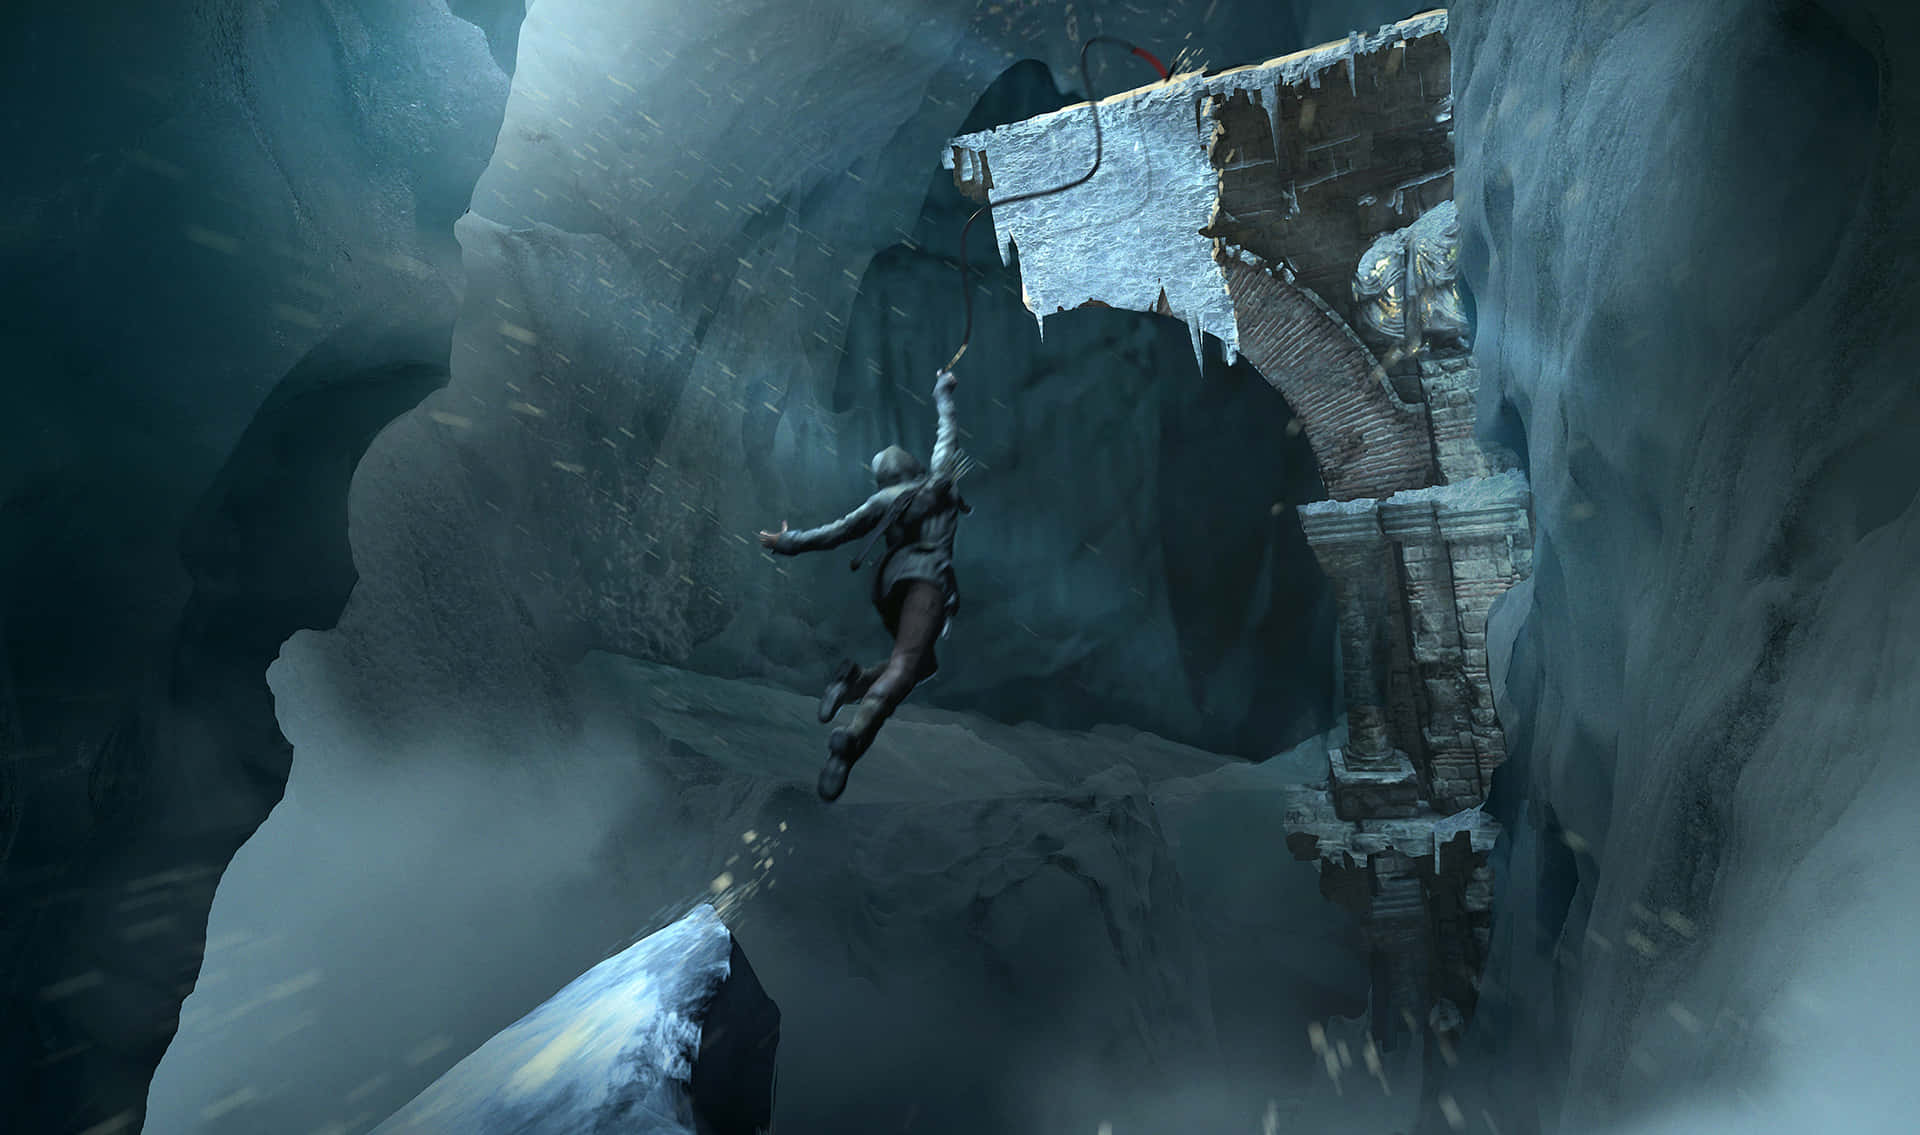 Oplevdet Spændende Eventyr I Rise Of The Tomb Raider.